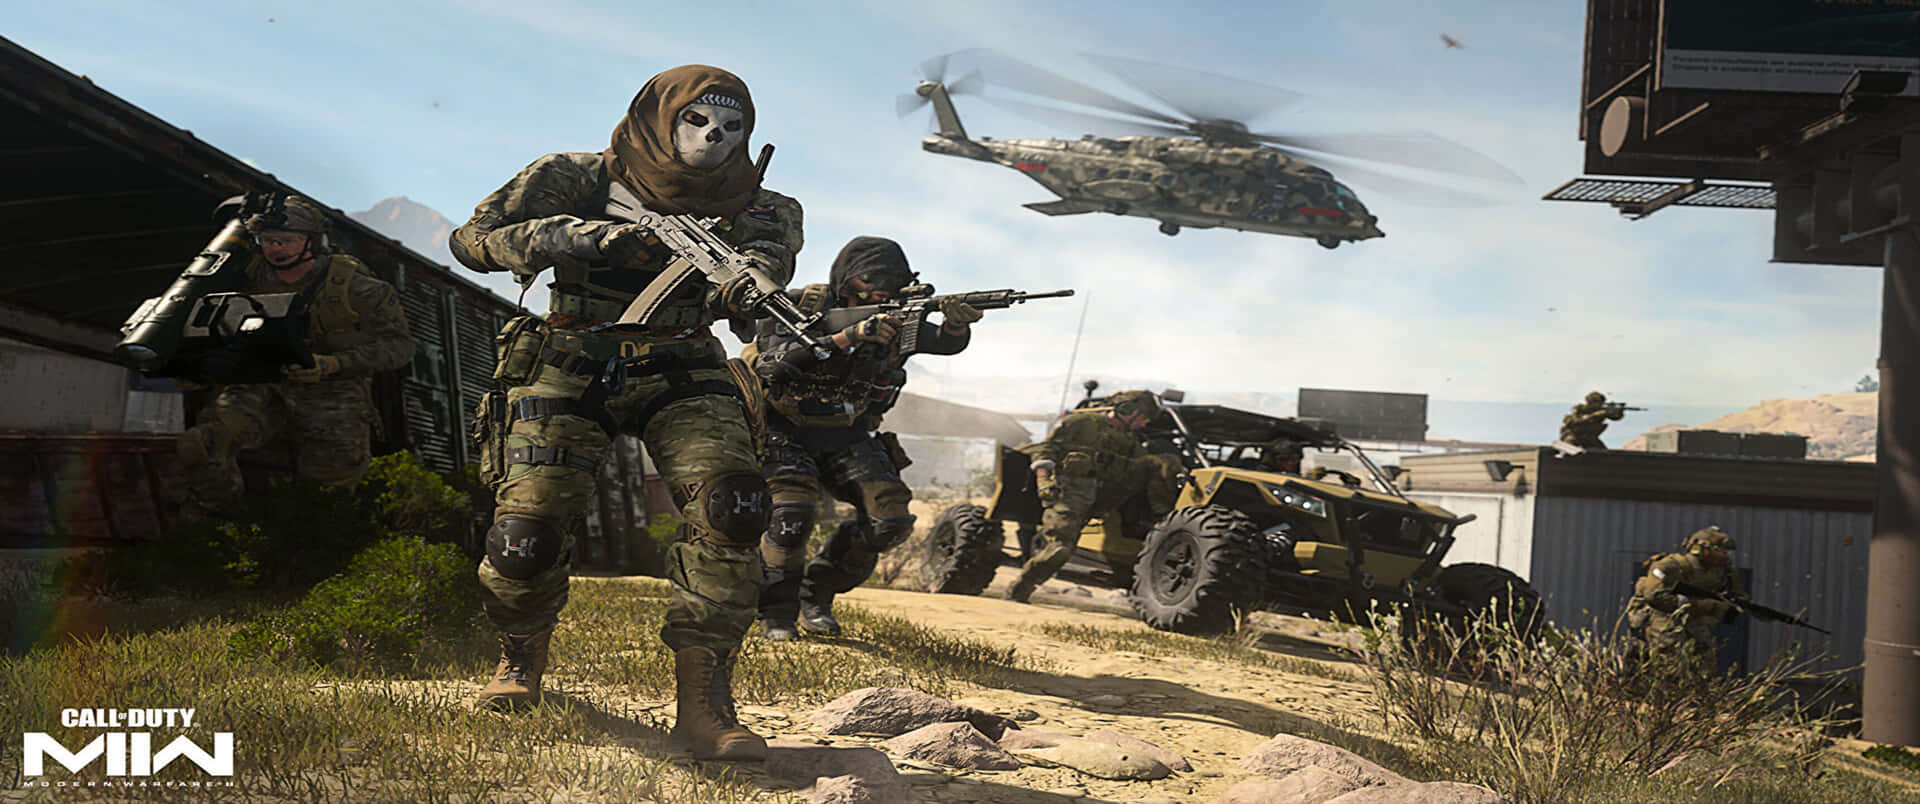 Sfondosimon Riley 3440x1440p Call Of Duty Modern Warfare